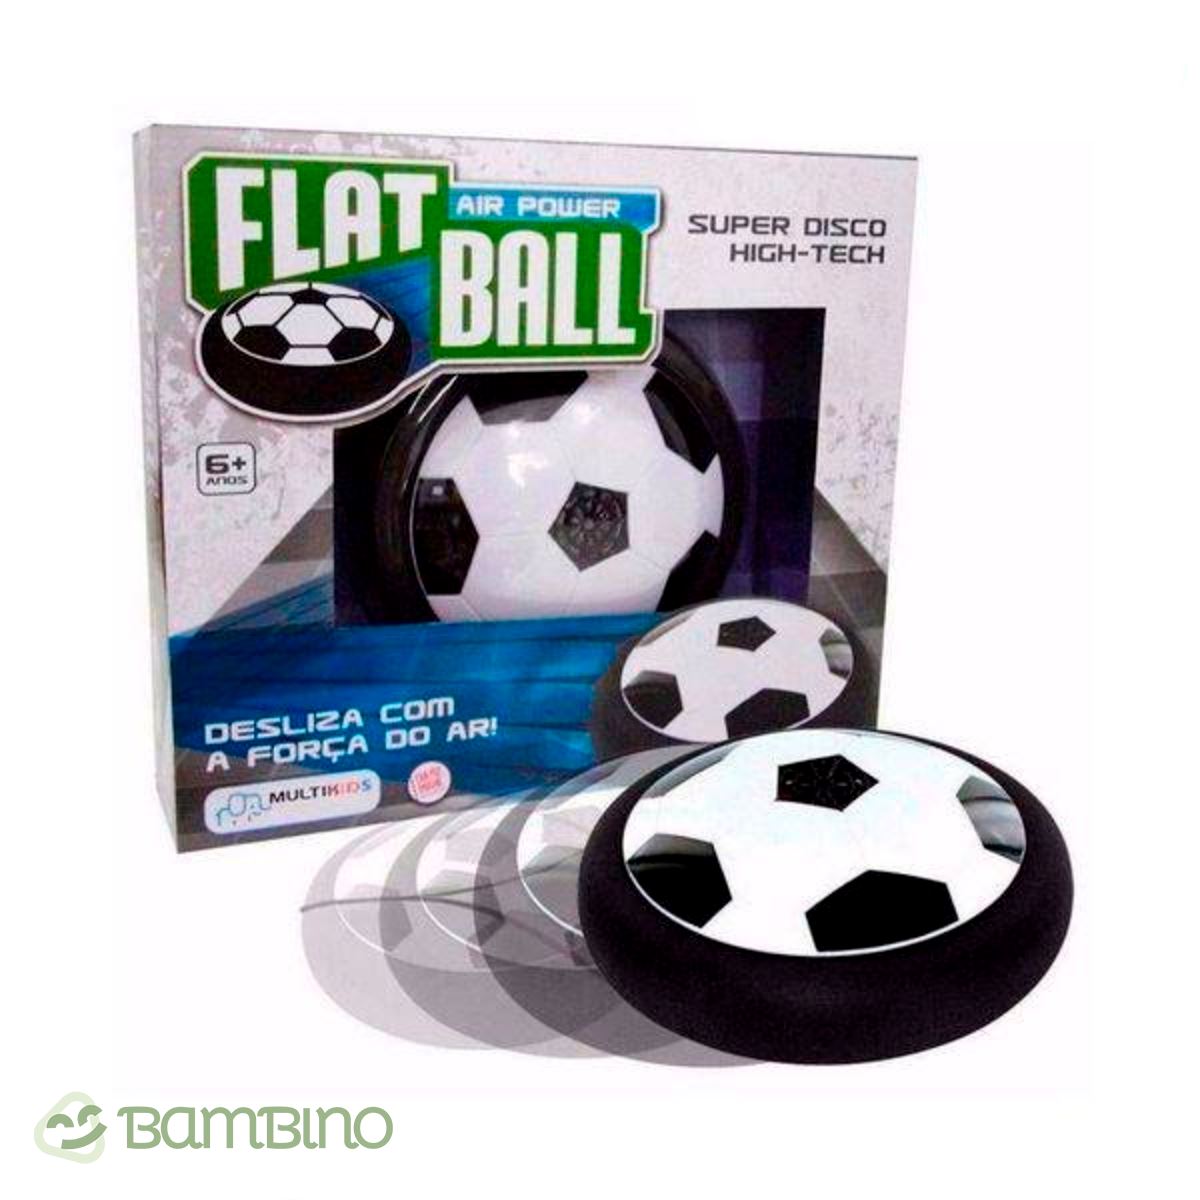 Bola em Disco Flutuante - Flat Ball Diversão Garantida Bola em Disco Flutuante - Flat Ball Diversão Garantida Loja do Bambino 